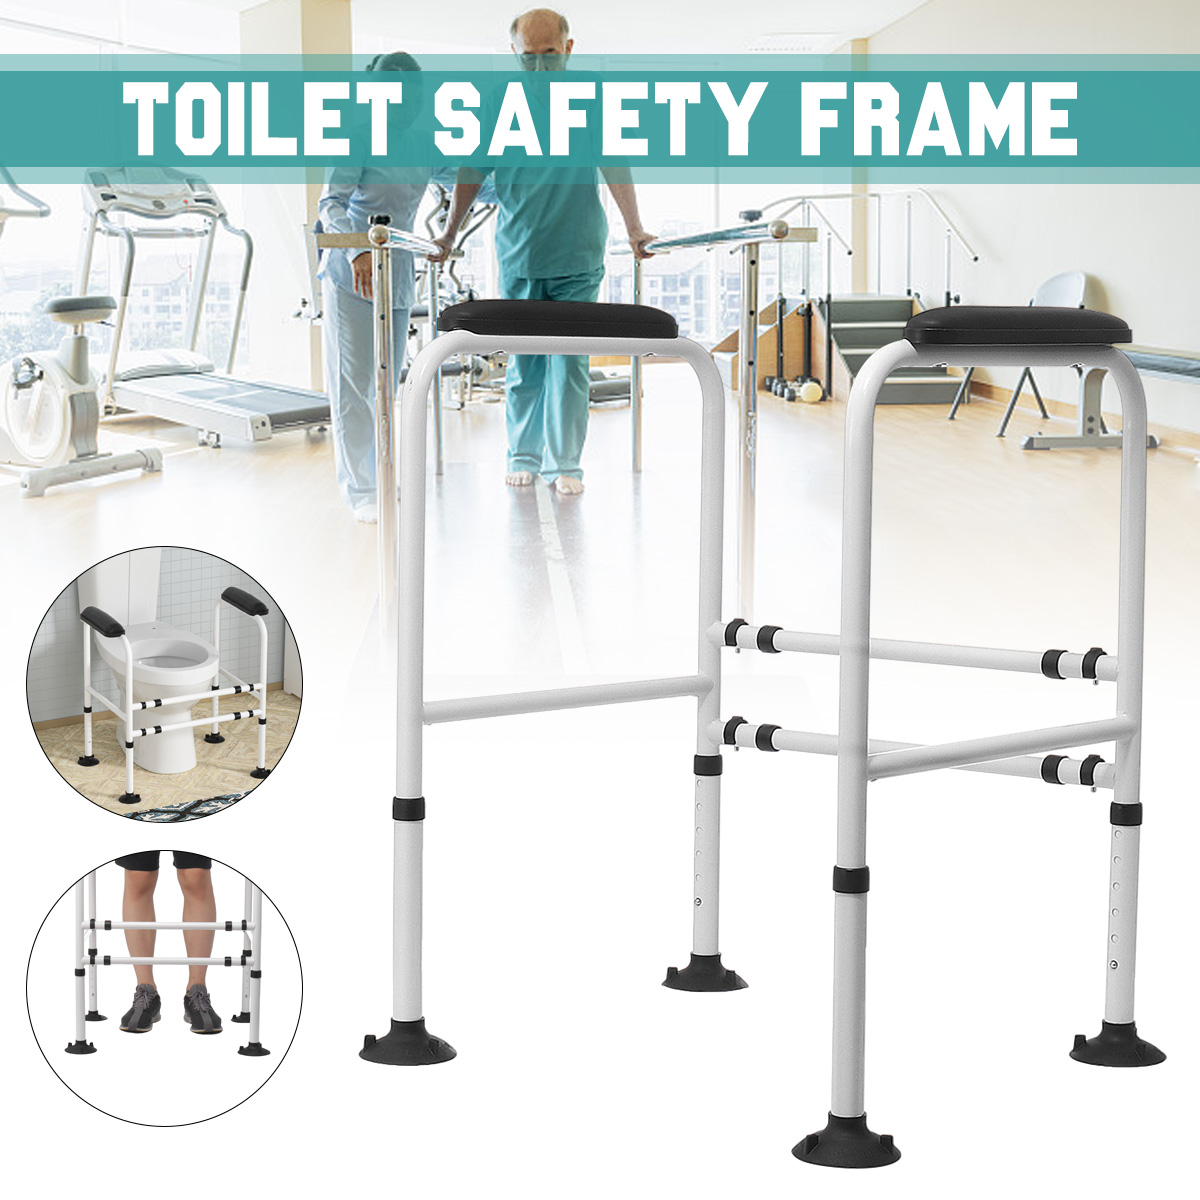 Adjustable-Toilet-Safety-Frame-Hand-Rail-Grab-Bar-Support-for-Elderly-Bathroom-1940089-1